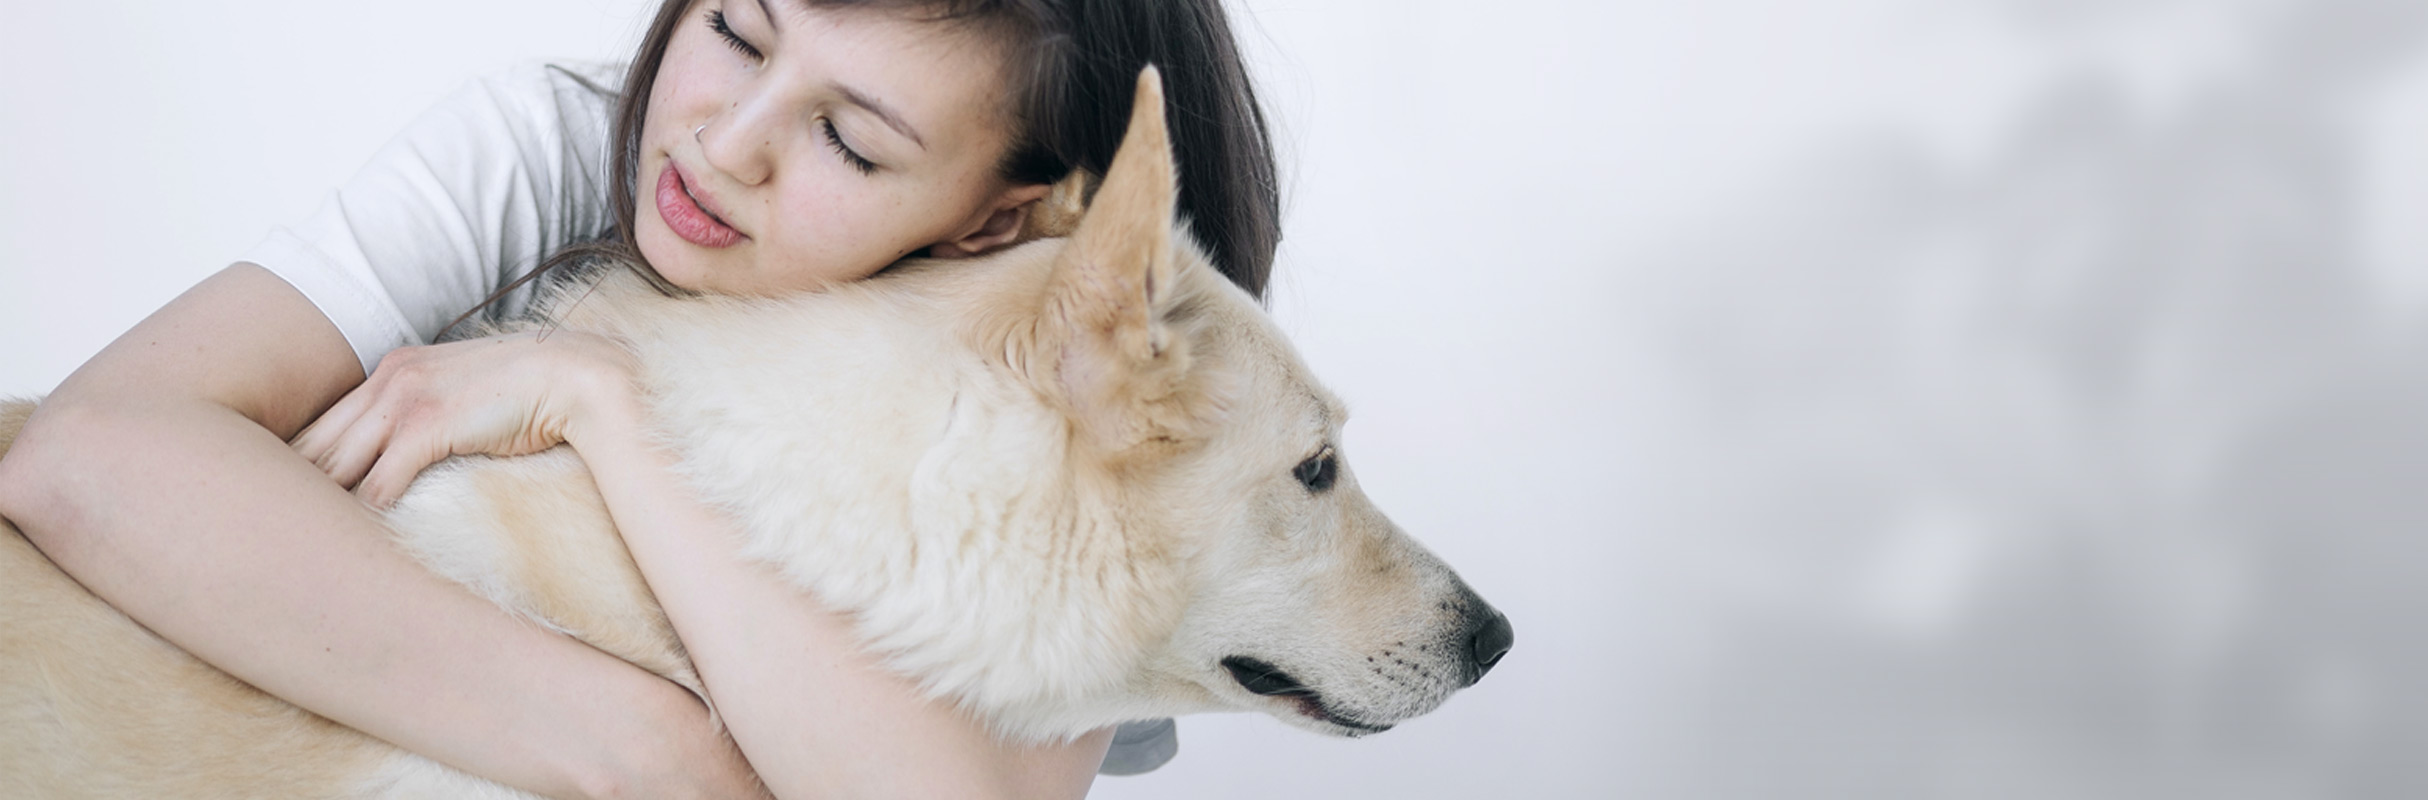 Beneficios de tener mascotas en la salud mental